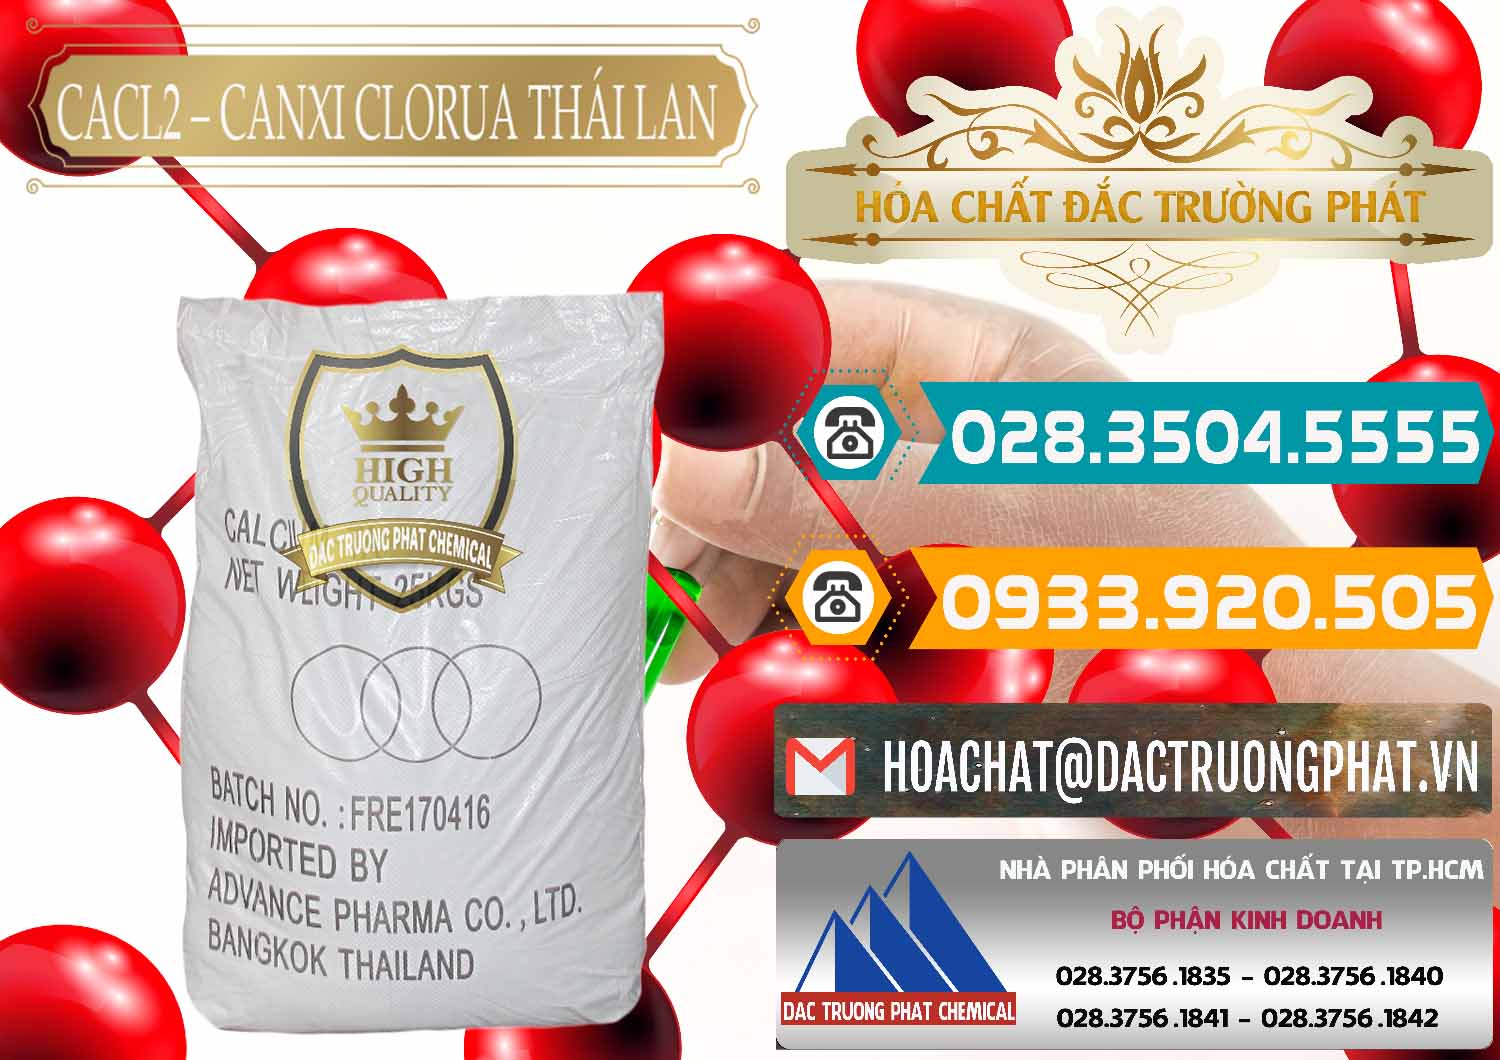 Cty chuyên bán - cung cấp CaCl2 – Canxi Clorua 96% Thái Lan - 0042 - Đơn vị chuyên kinh doanh ( phân phối ) hóa chất tại TP.HCM - congtyhoachat.vn